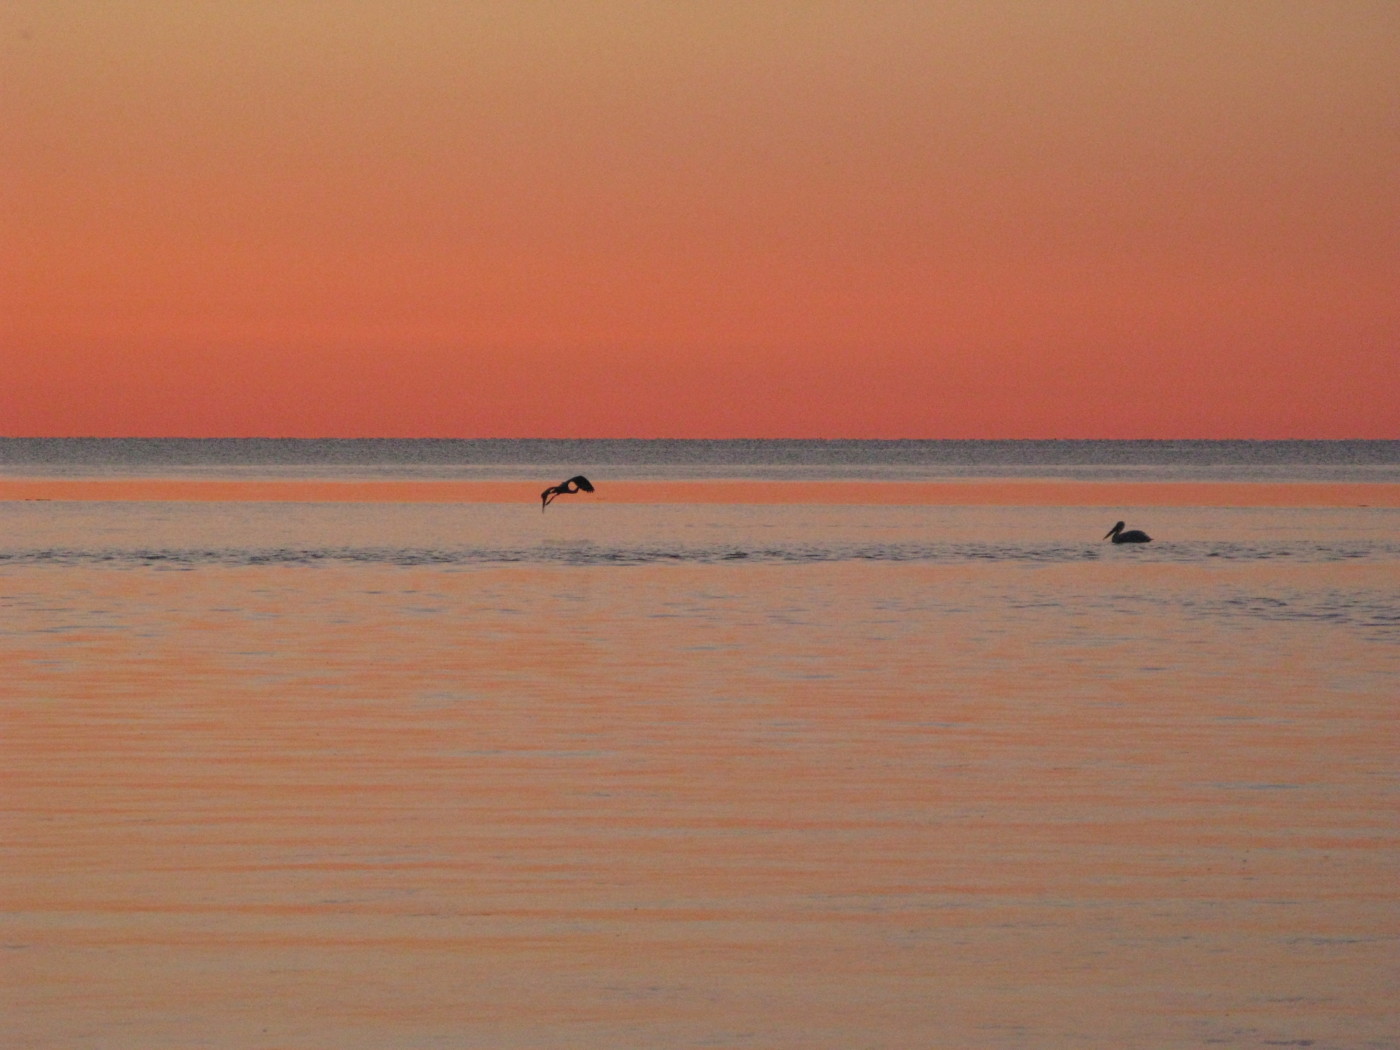 Lake Winnipeg. Photo: My name is Julie / Flickr